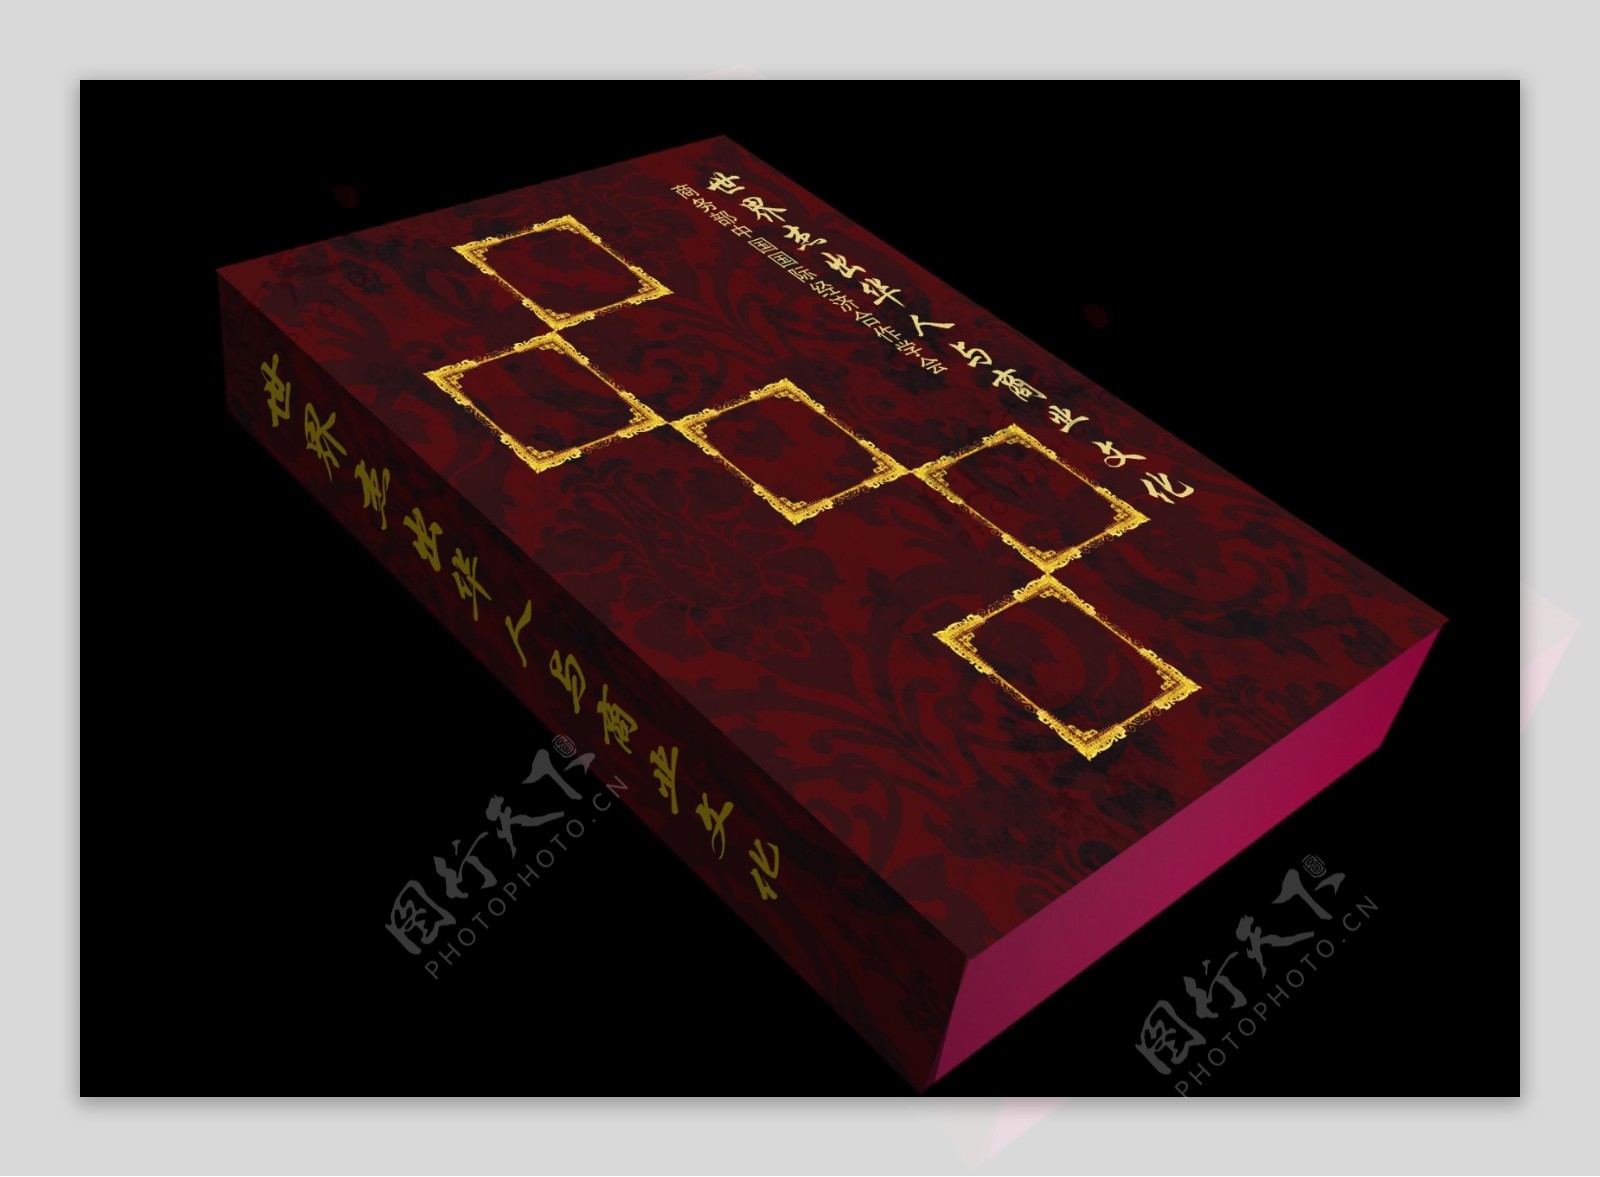 2010书盒设计